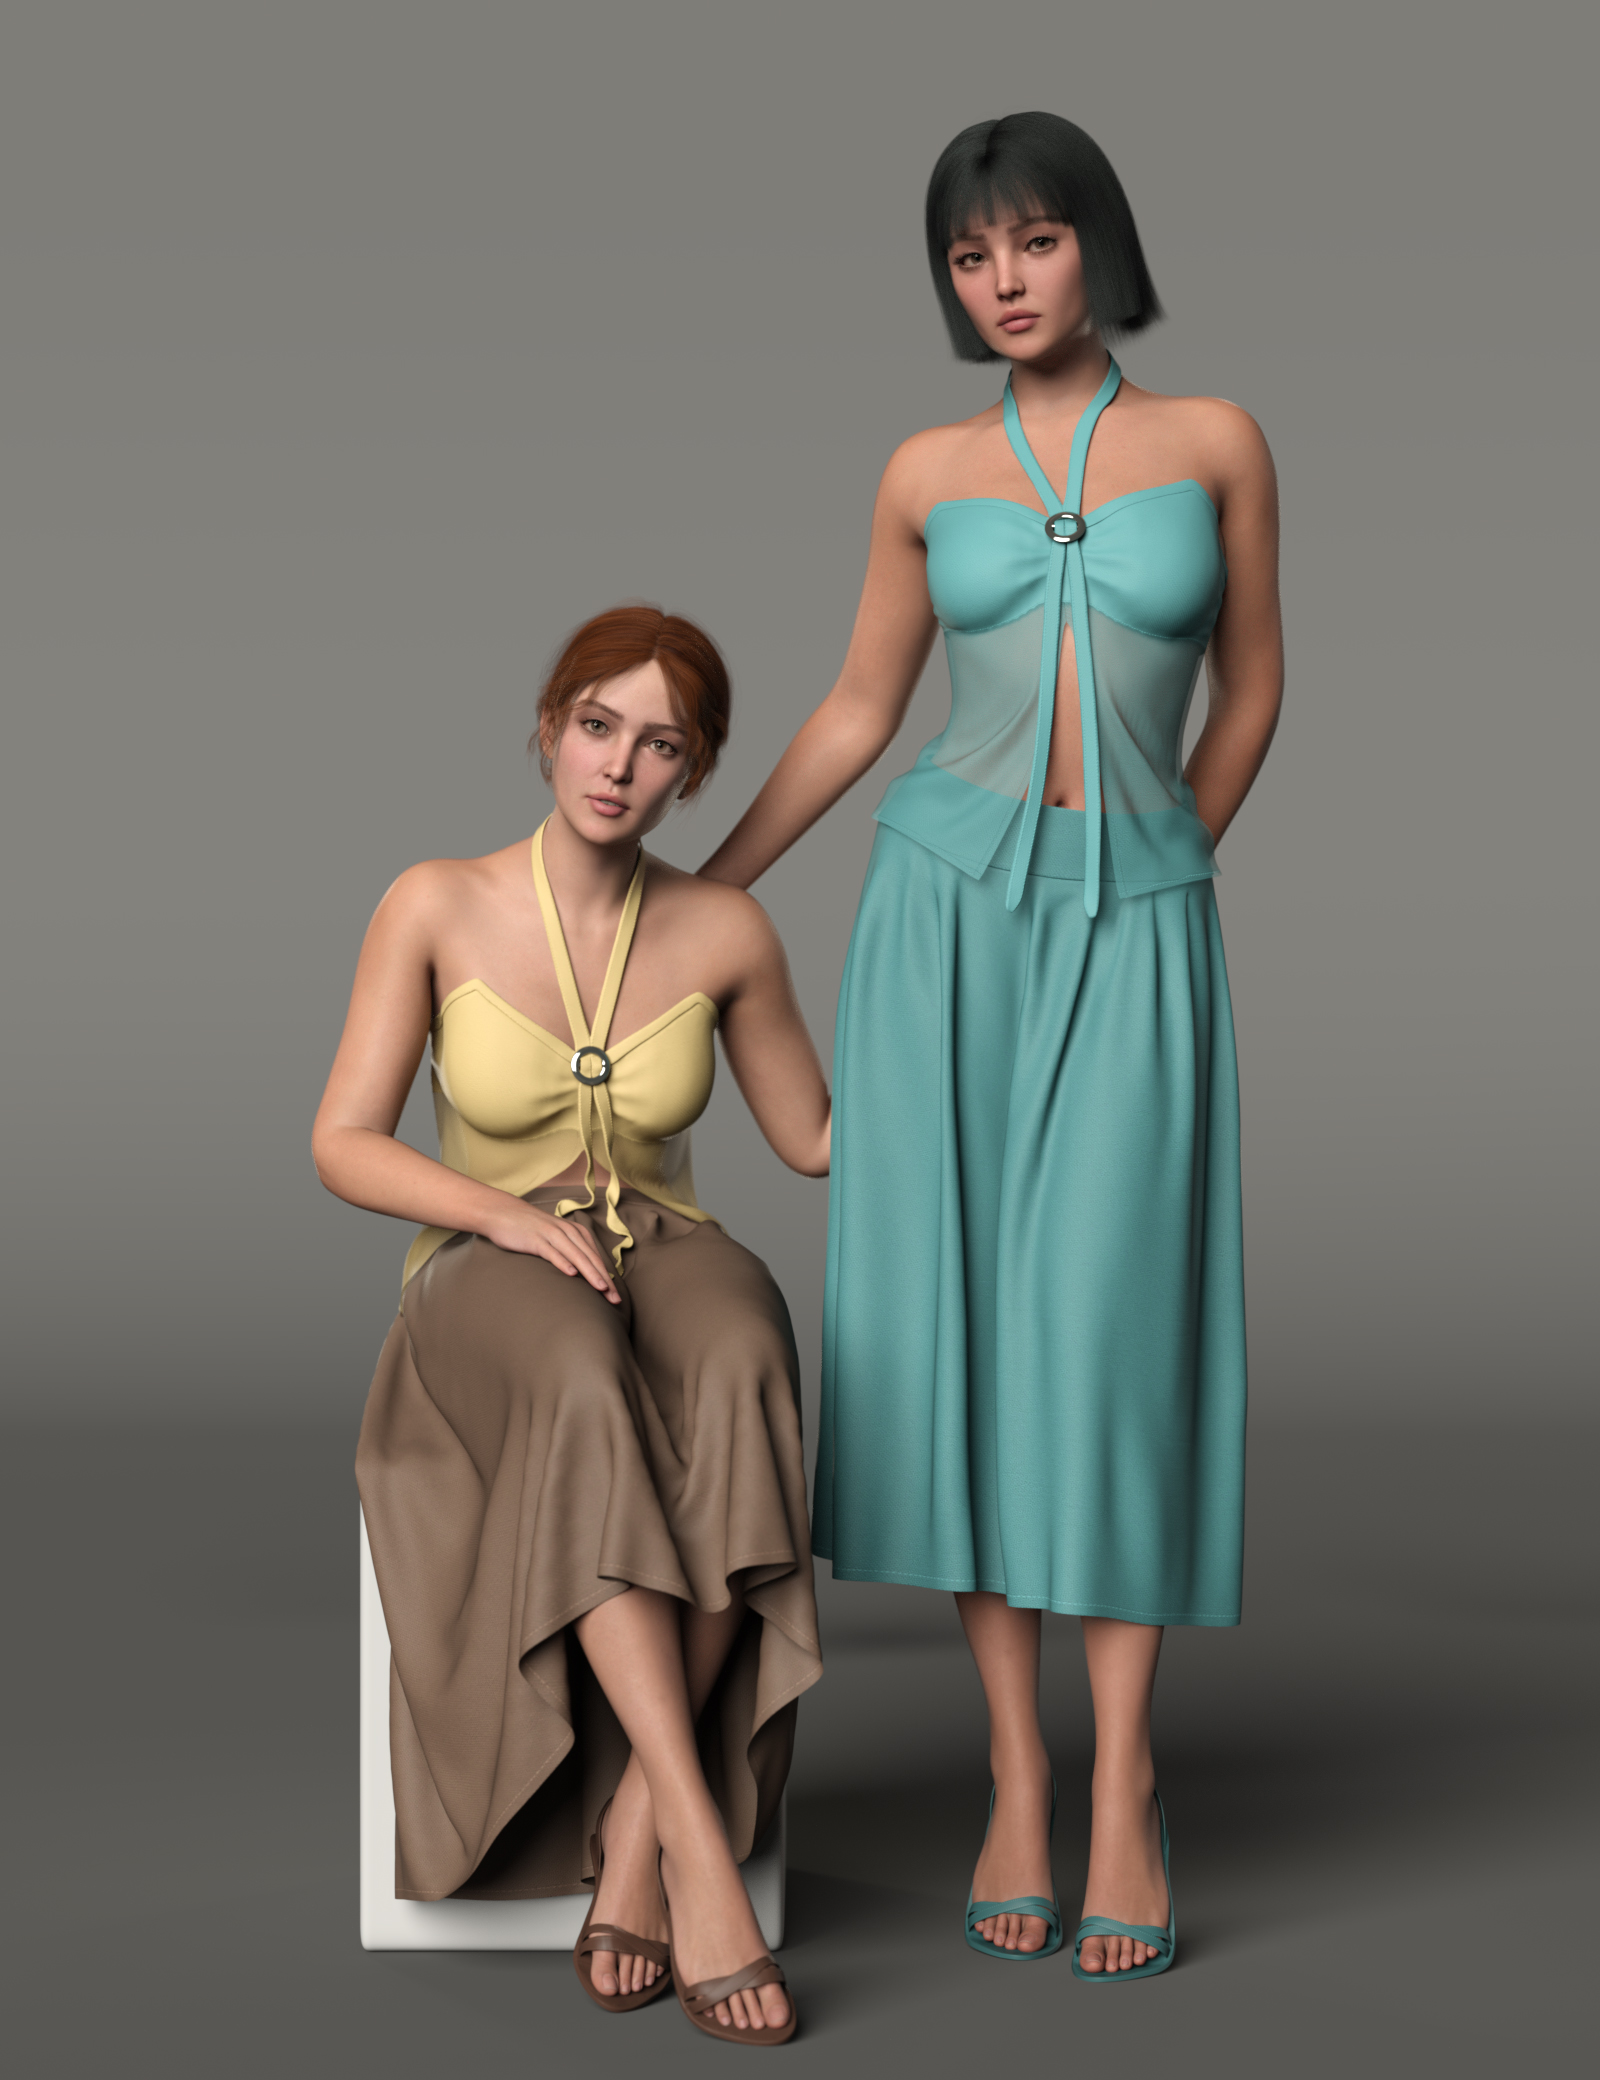 dForce MK Halter Crop Top Long Skirt for Genesis 9 by: wsmonkeyking, 3D Models by Daz 3D